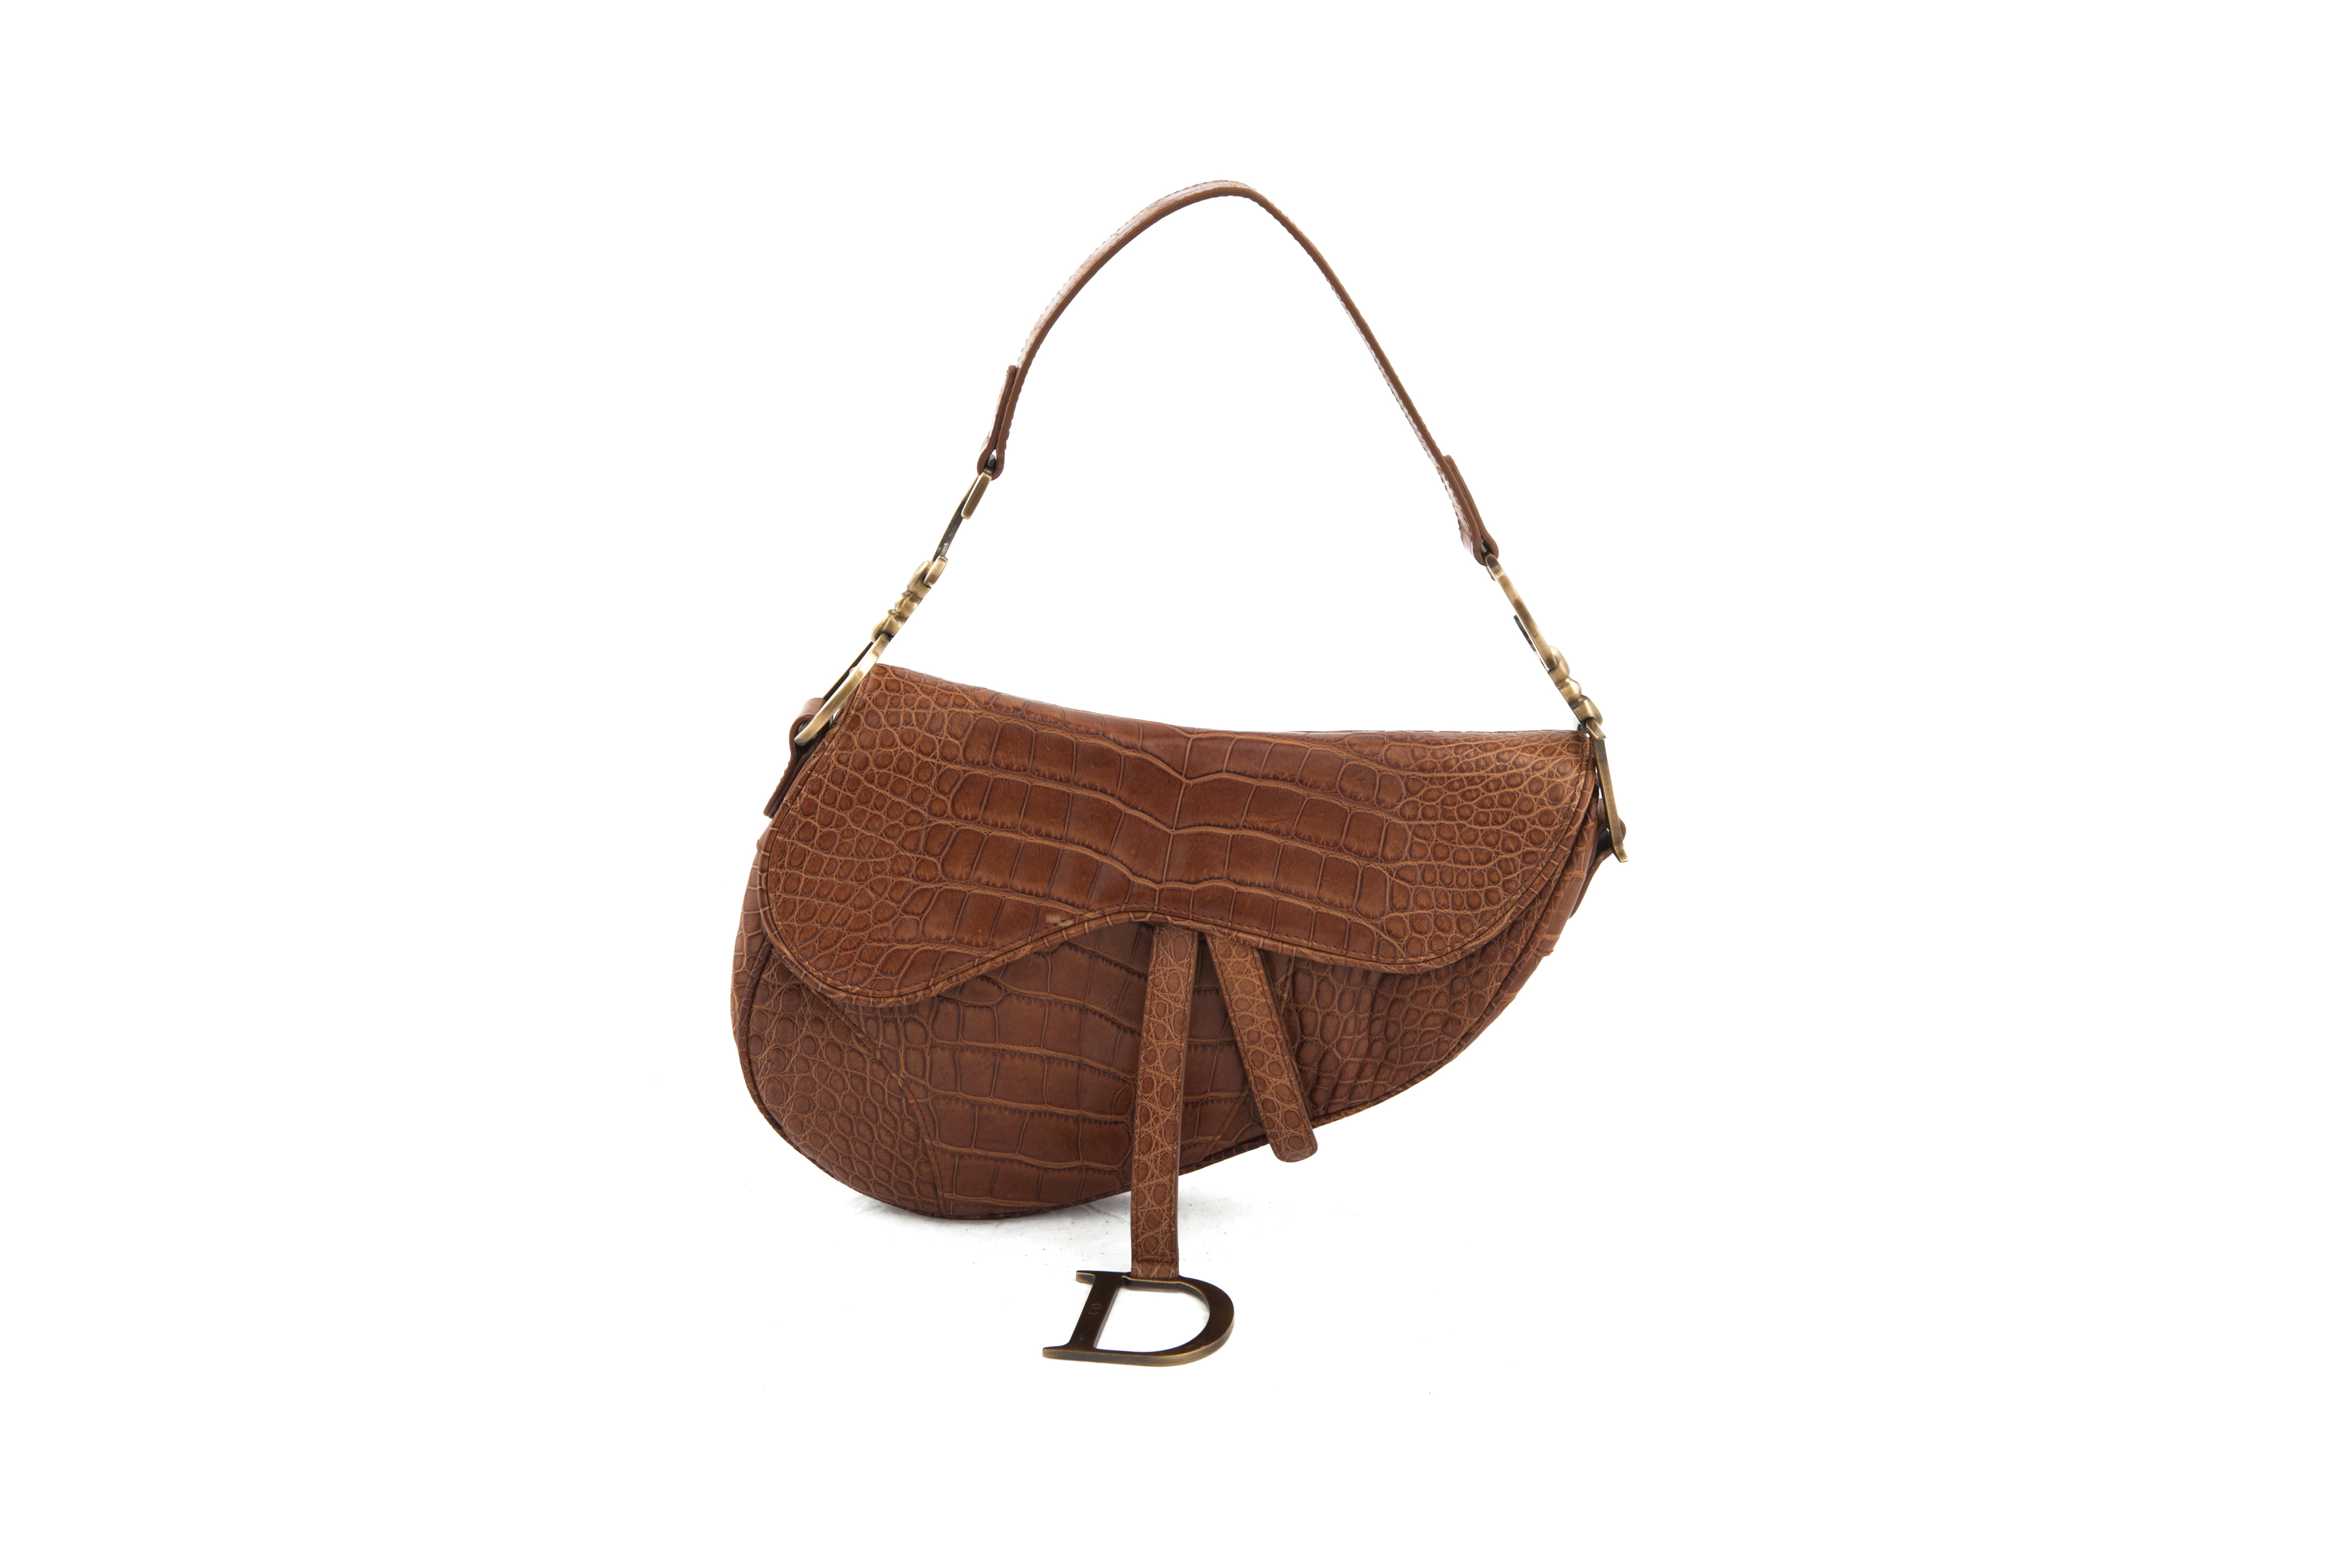 Dior ”saddle bag” brown leather 